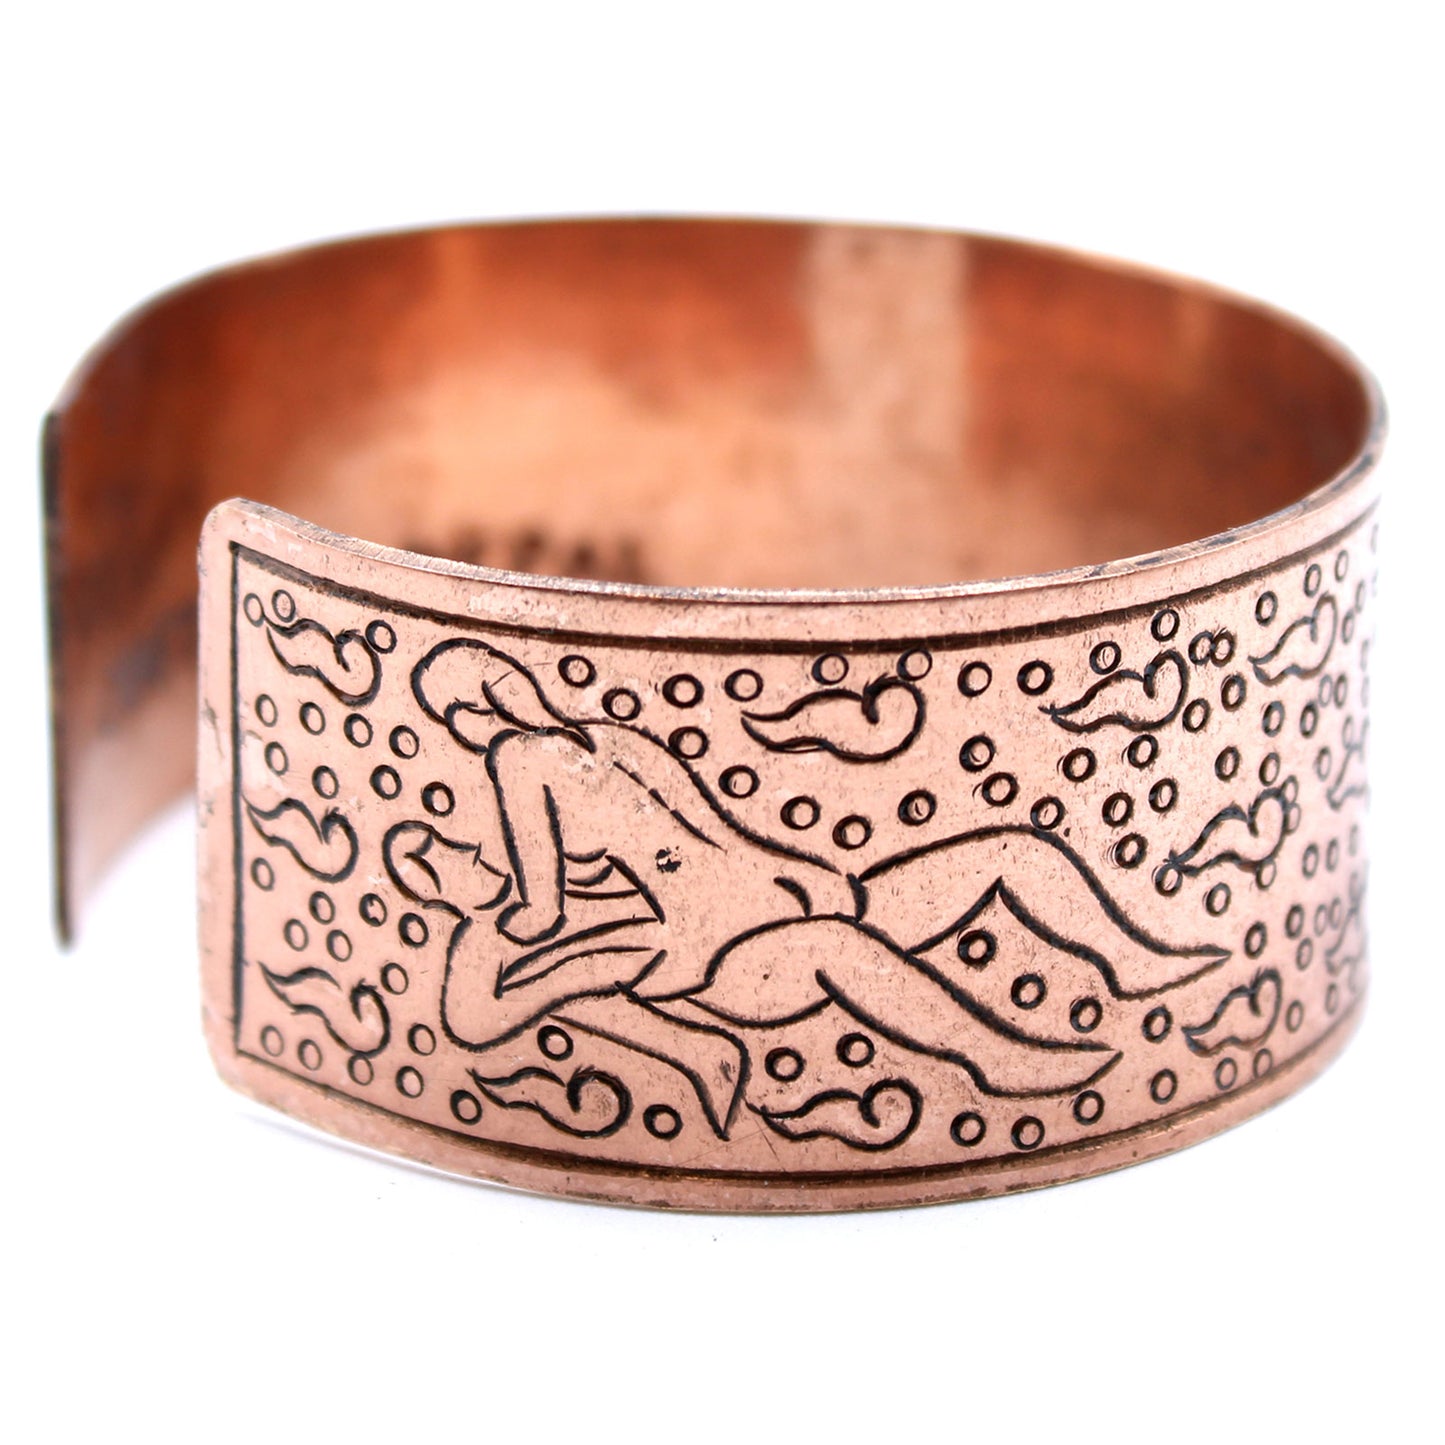 Copper Tibetan Bracelet - Kamasutra